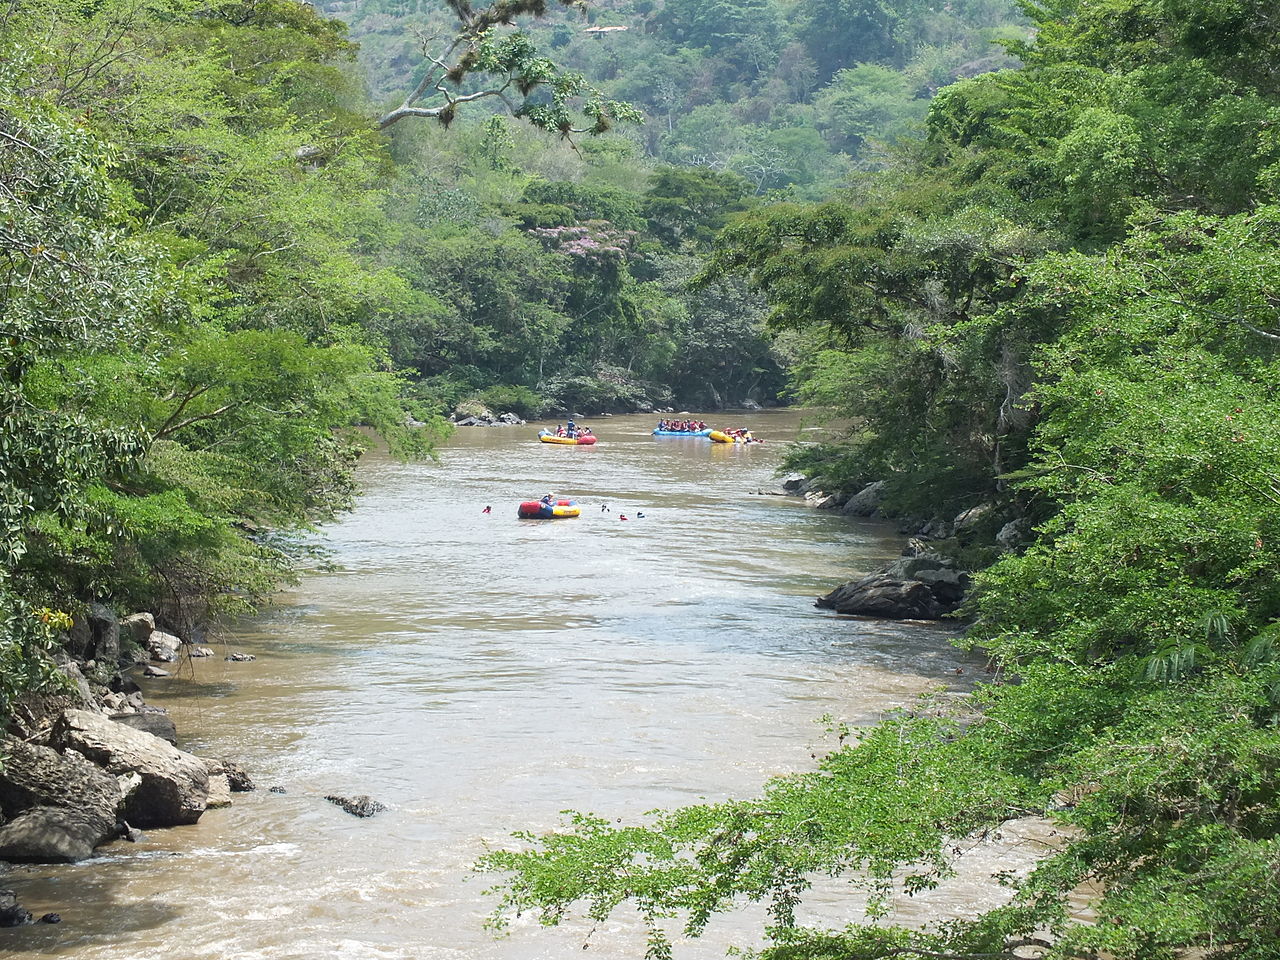 río Fonze, uno de los lugares para hacer deportes extremos en Colombia